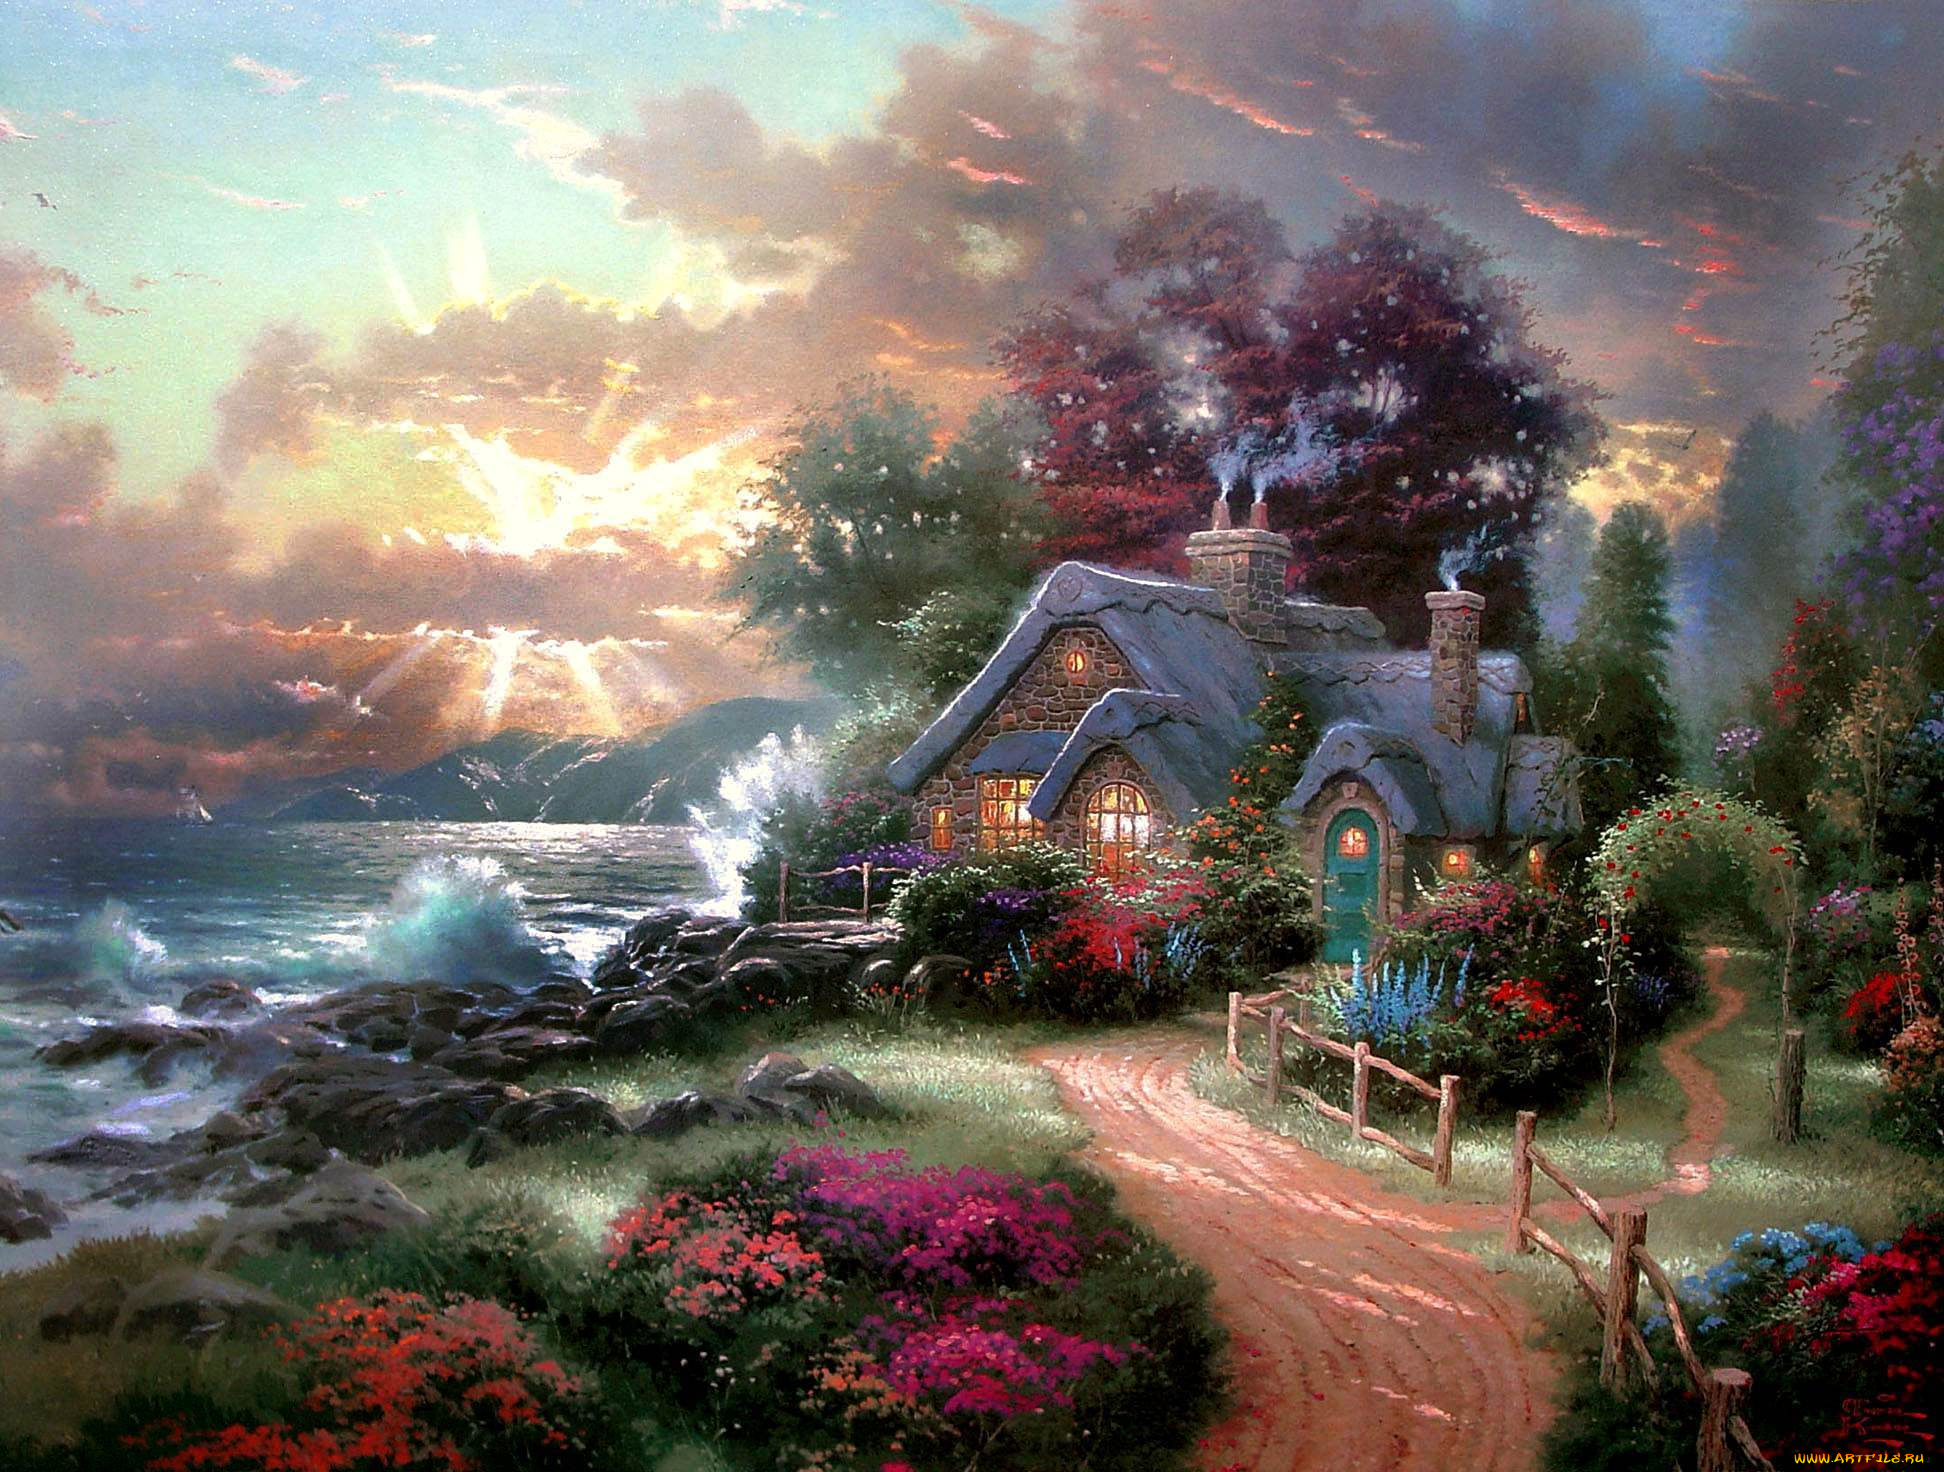 рисованное, живопись, море, берег, волны, дом, свет, дым, труба, цветы, тропинка